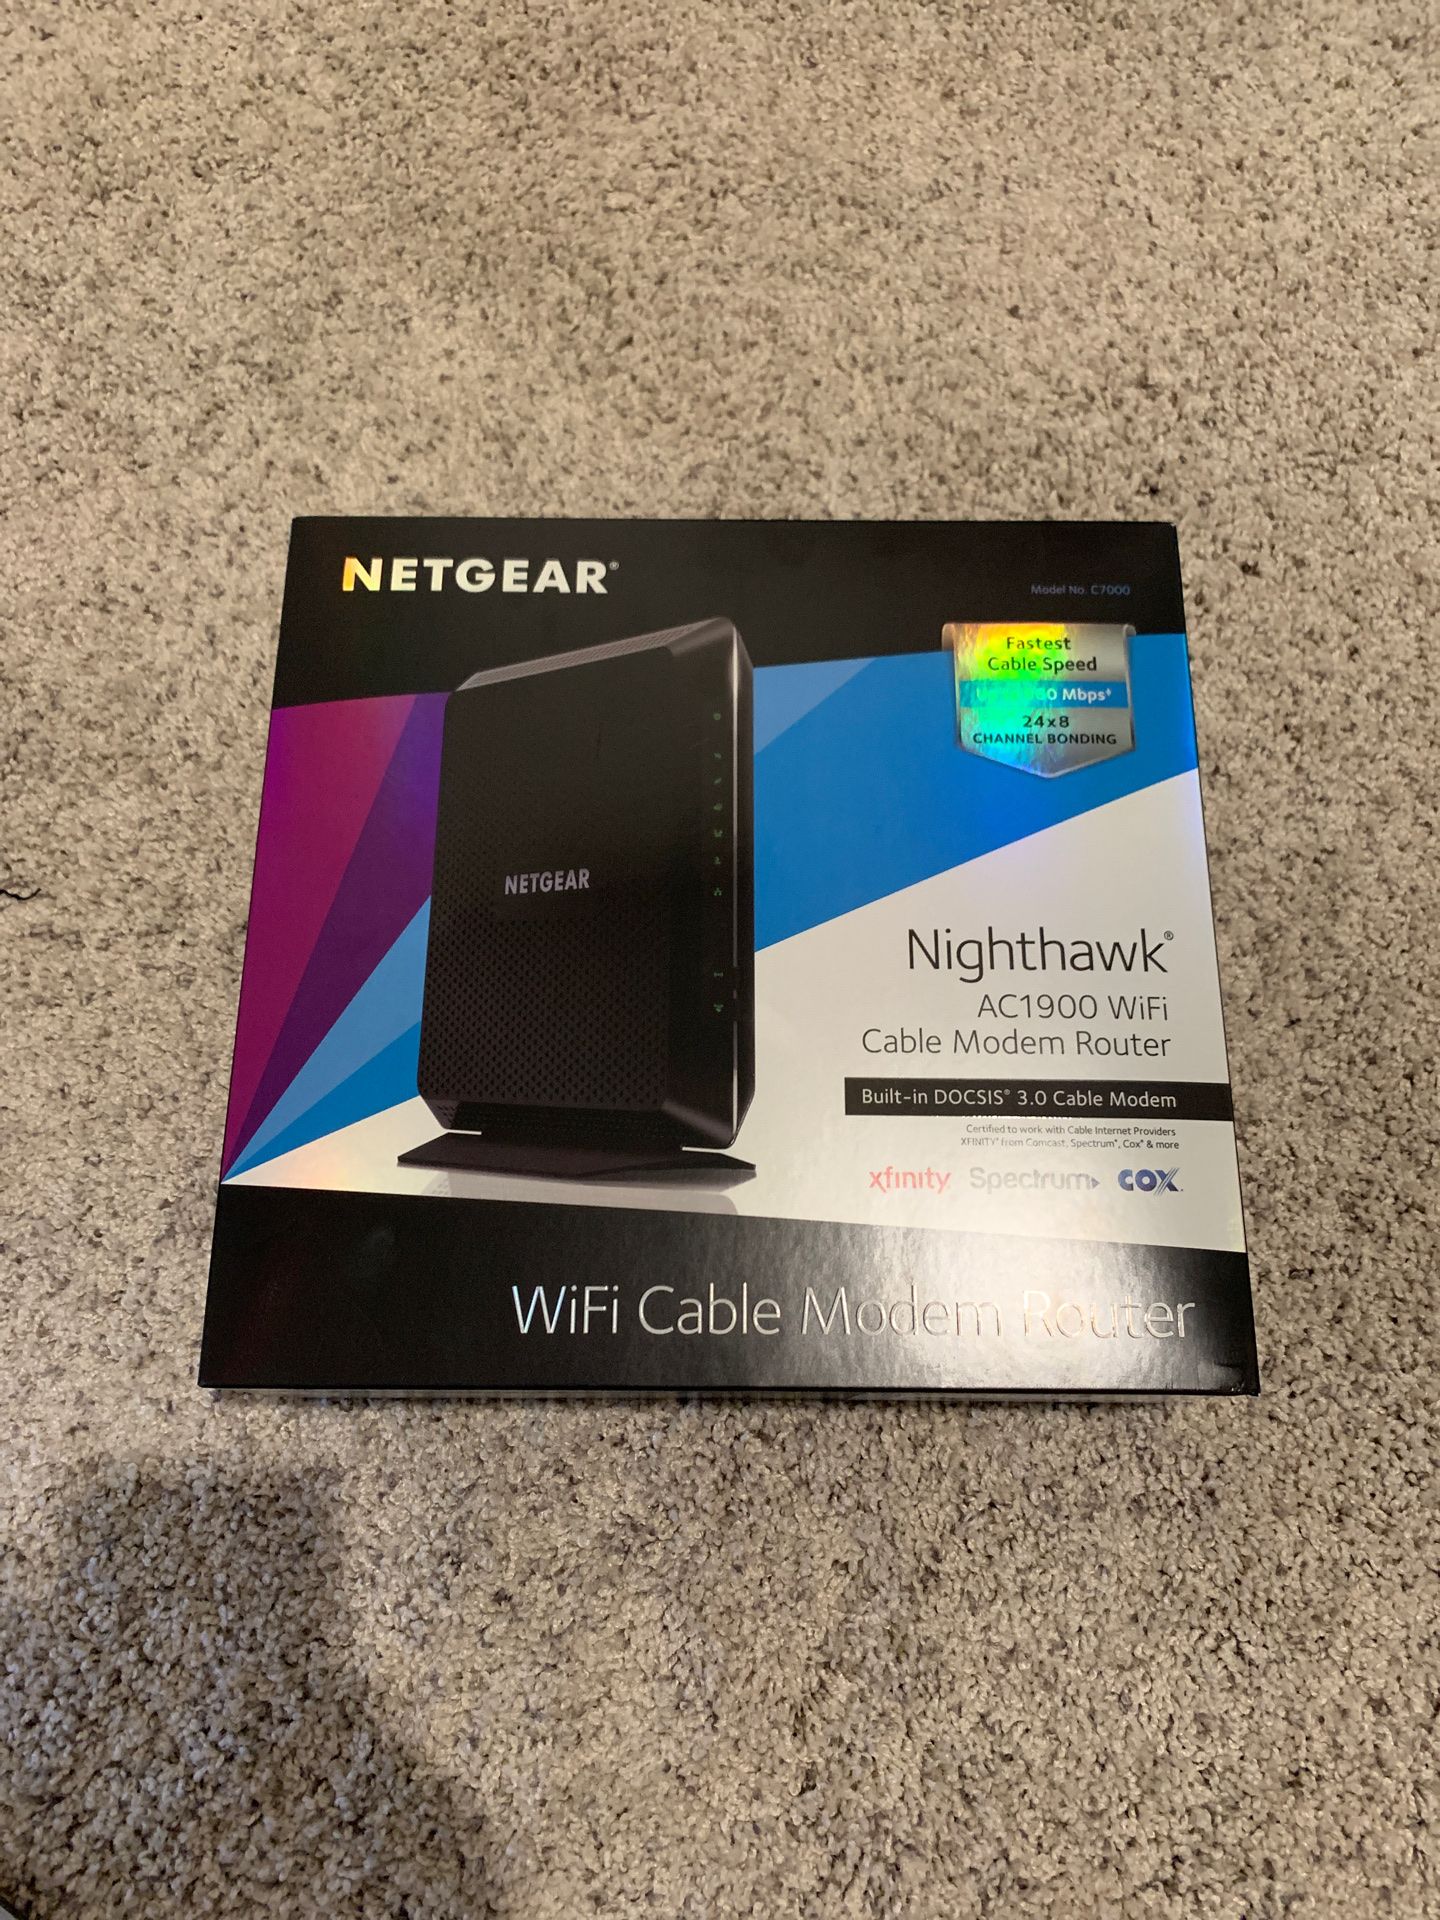 Netgear Nighthawk AC1900 like new